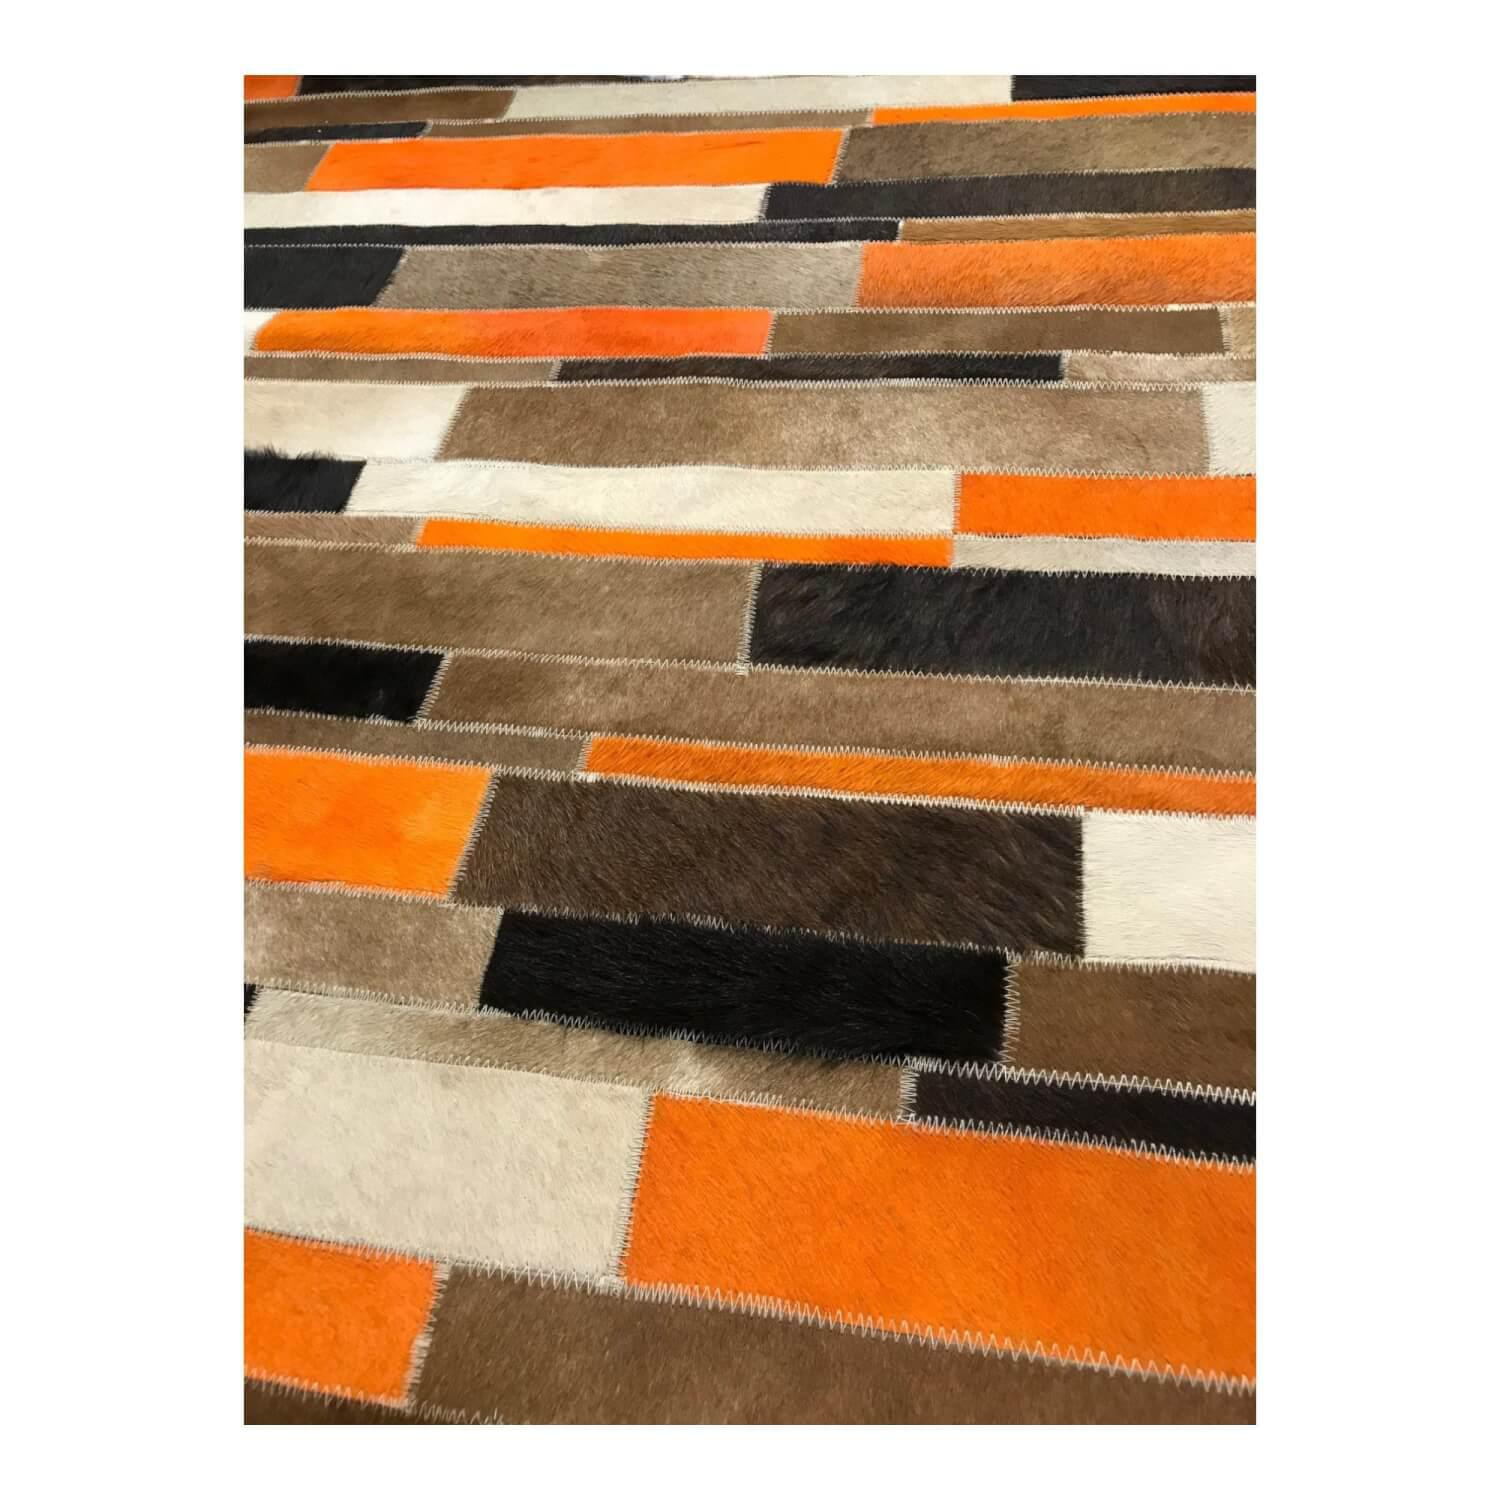 Teppich 37856 Brick Orange Aus Echtleder Kuhfell Gefärbt Orange Braun Schwarz Beige Unterseite Wolle Gewebt